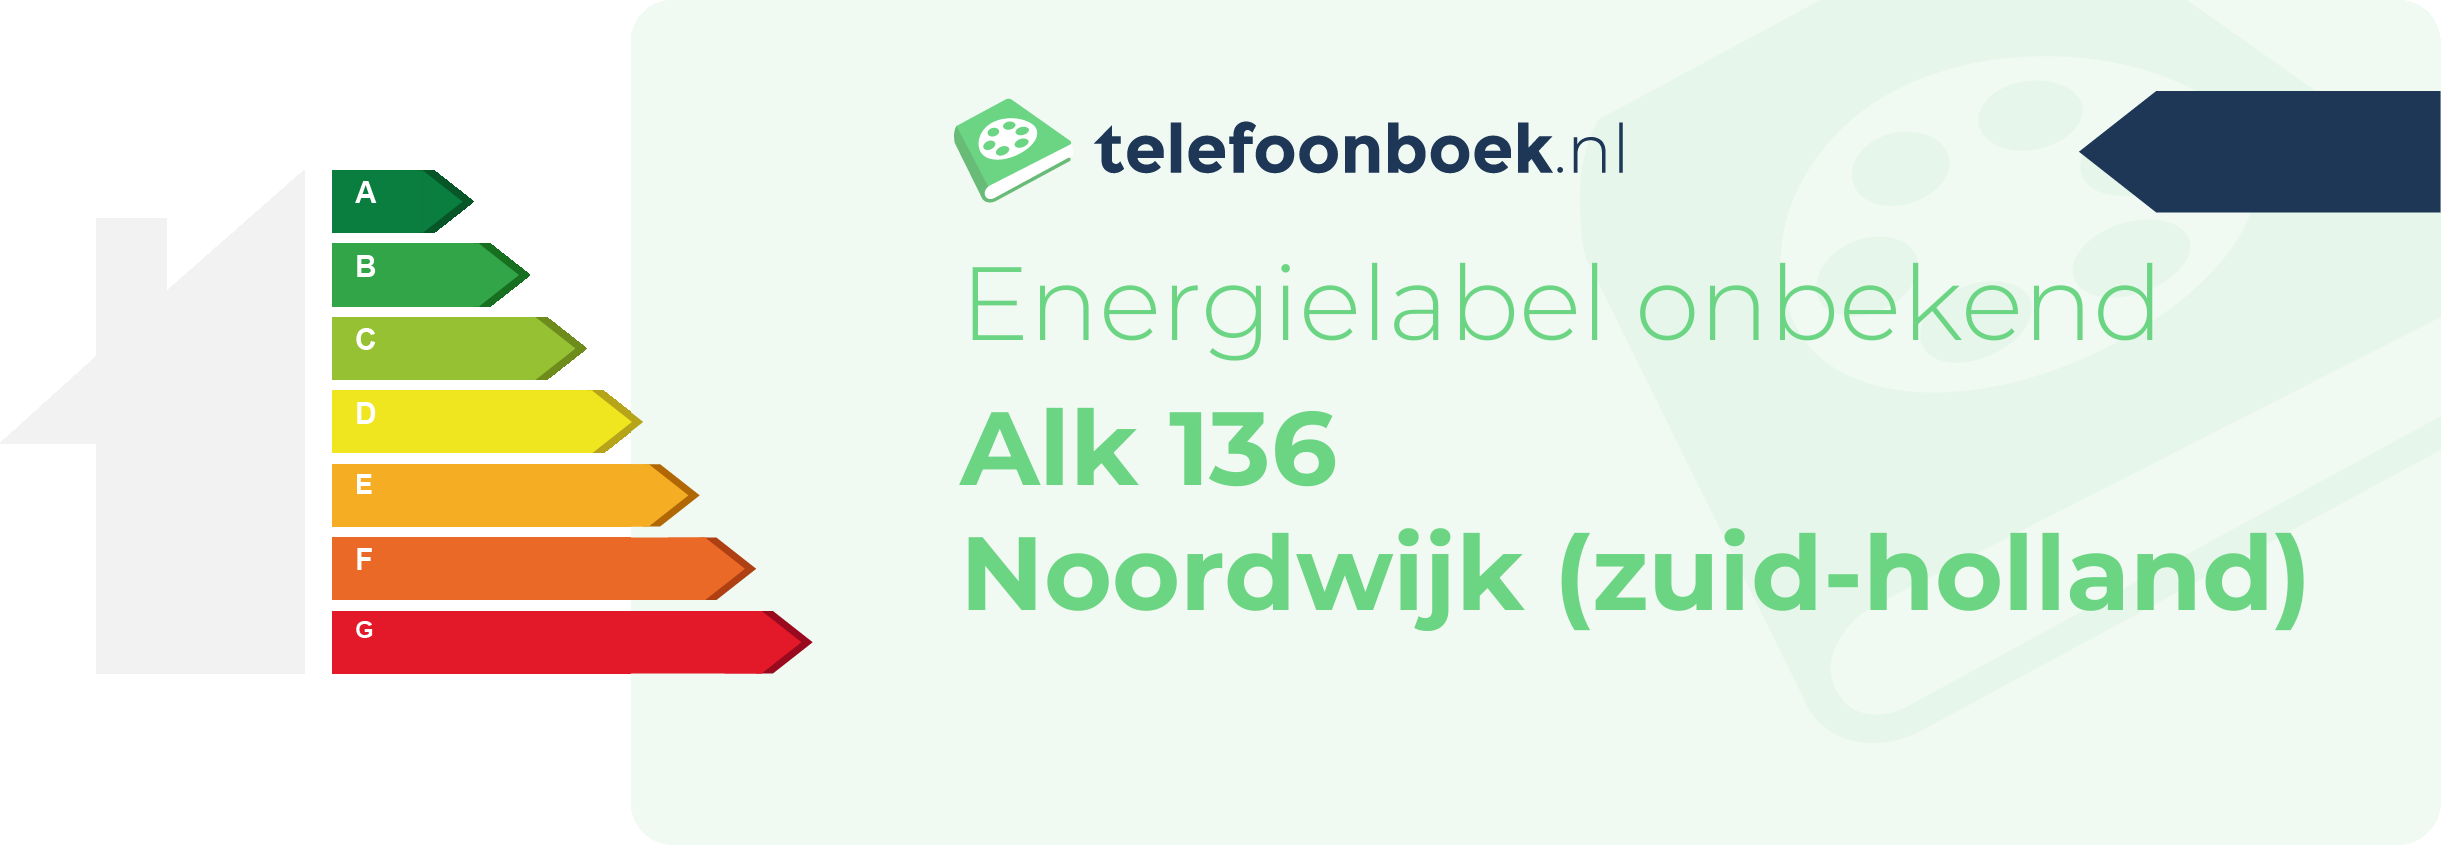 Energielabel Alk 136 Noordwijk (Zuid-Holland)